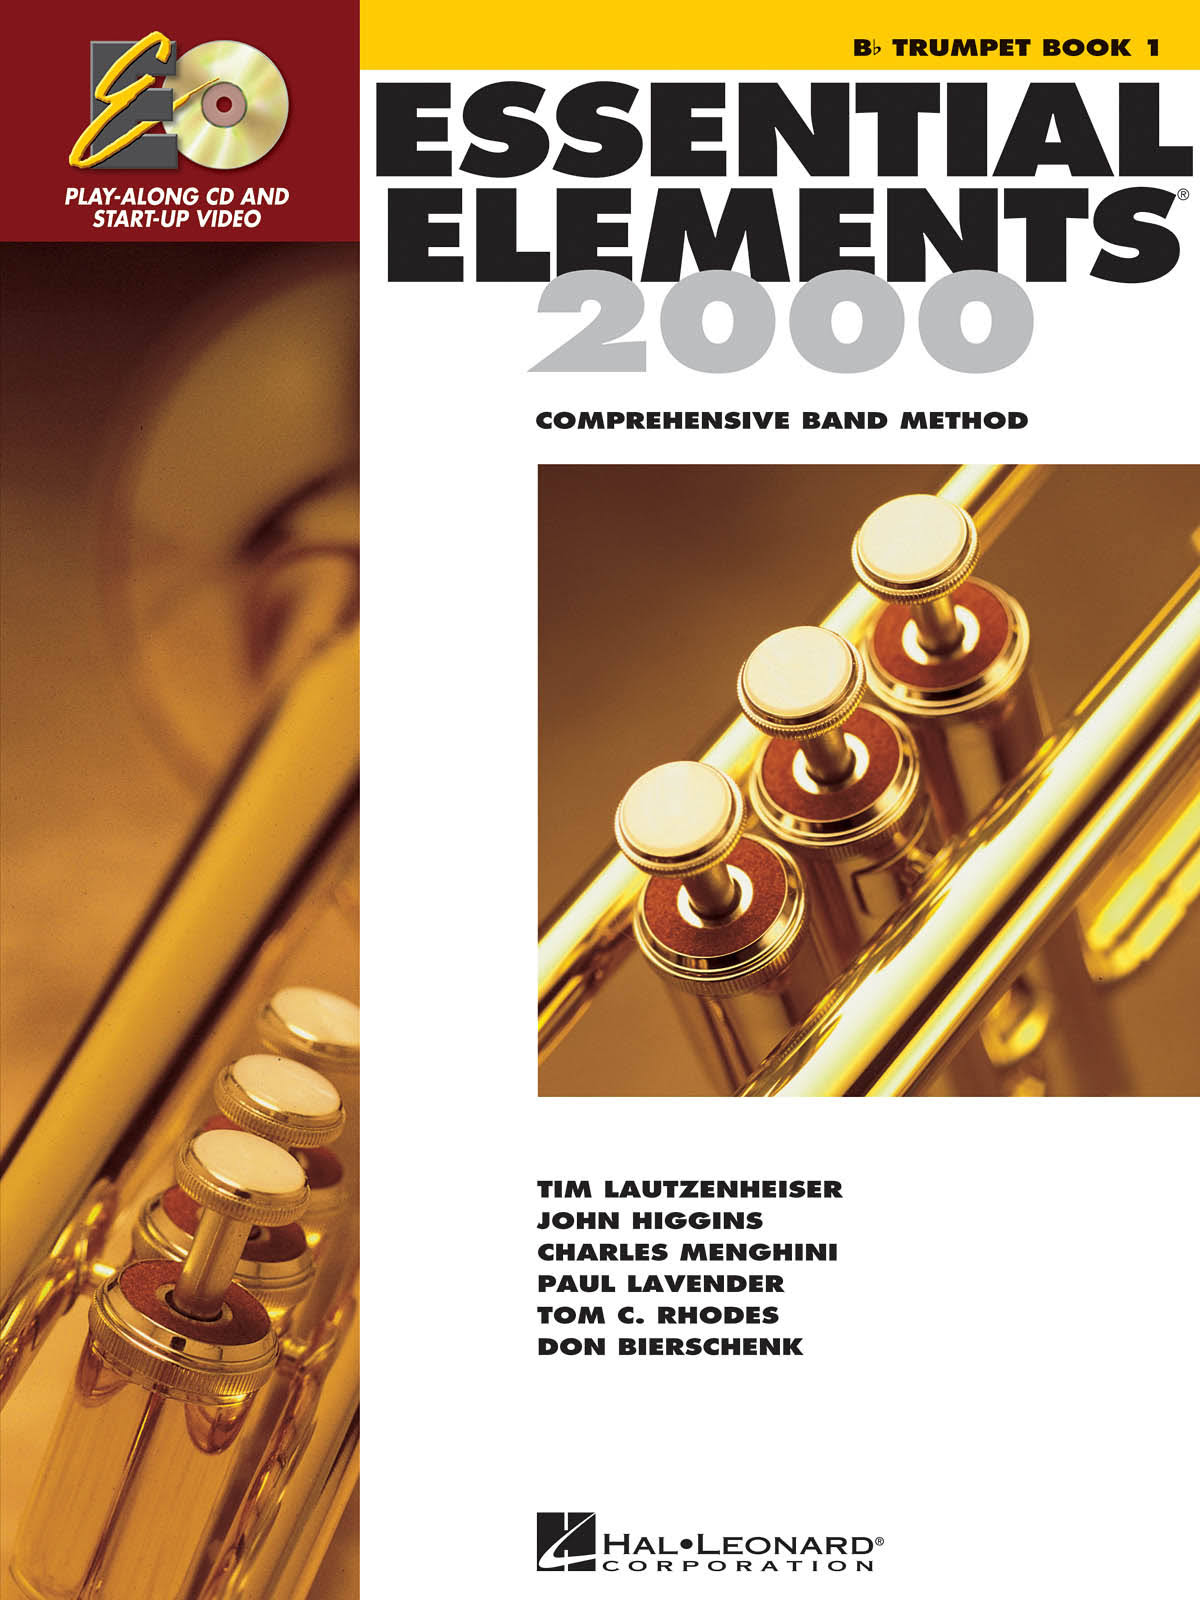 Essential Elements 2000: Comprehensive Band Method - Hal Leonard Publishing